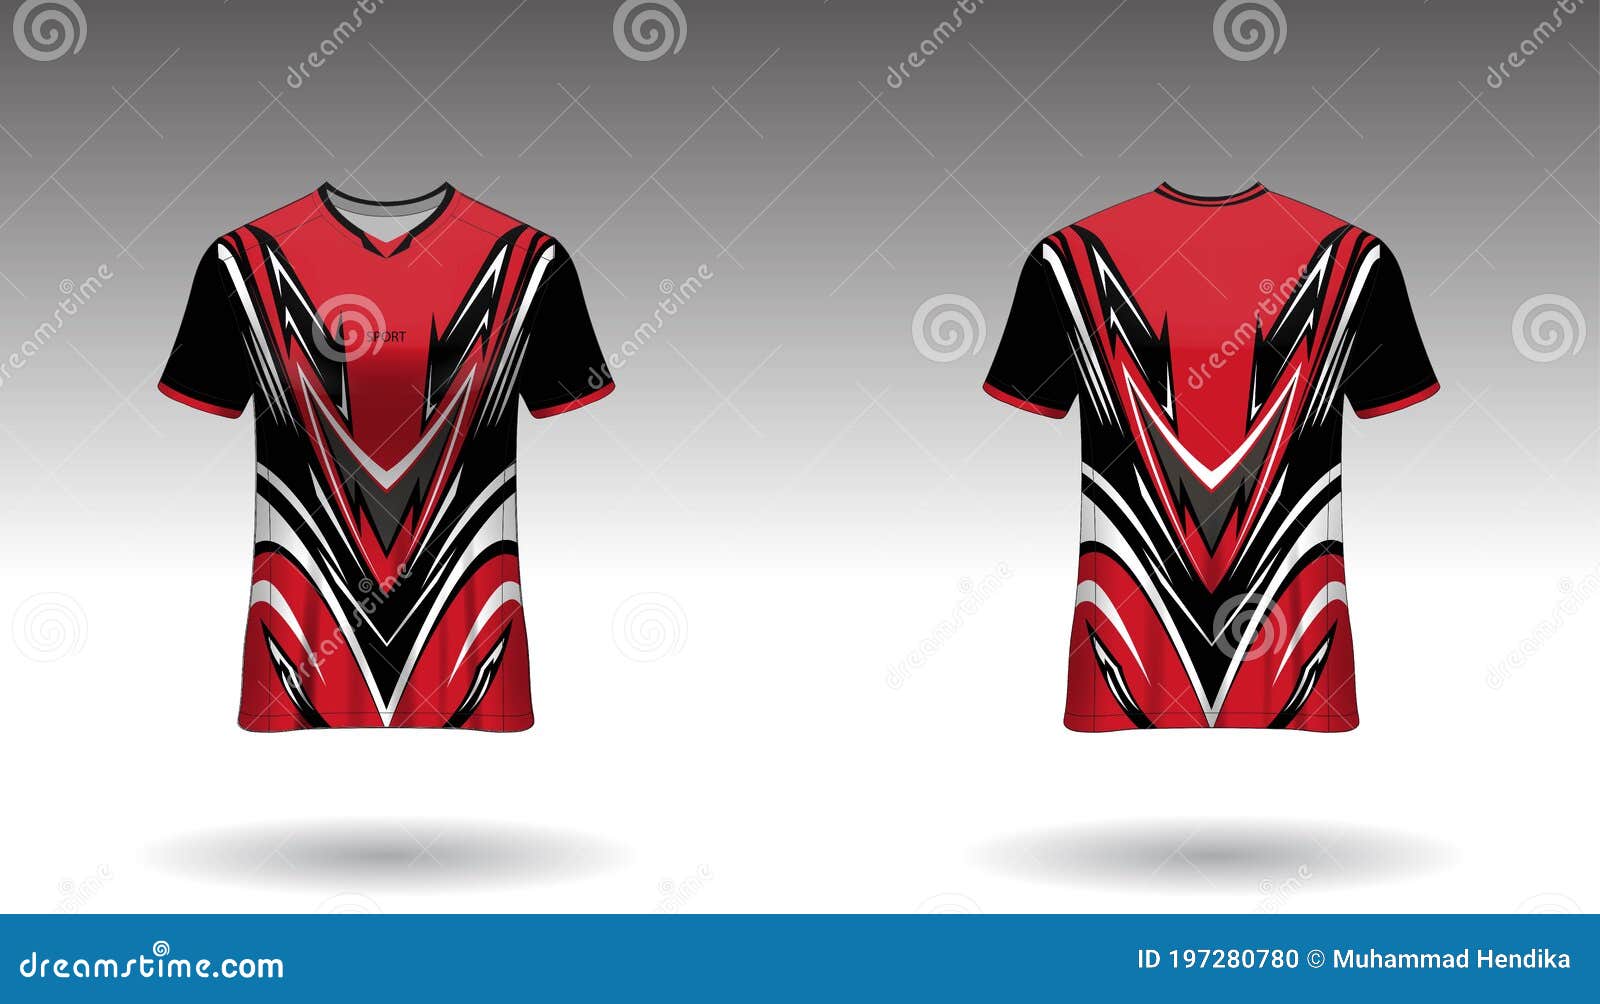 Camiseta de fútbol americano, plantilla deportiva de camiseta. vista  frontal y posterior uniforme.